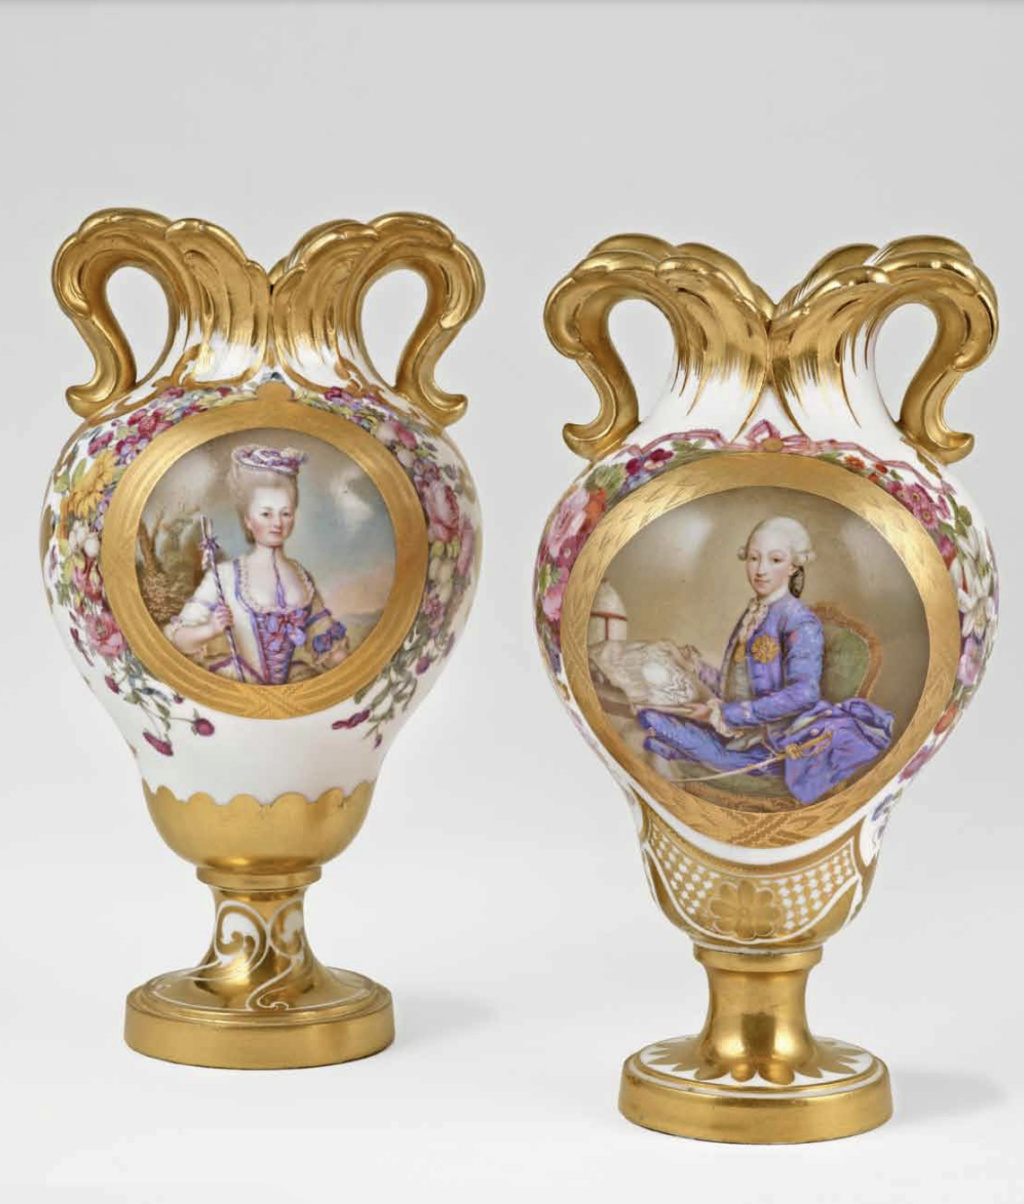 Le premier vase en porcelaine de Sèvres acheté par Marie-Antoinette en 1774 Capt3355